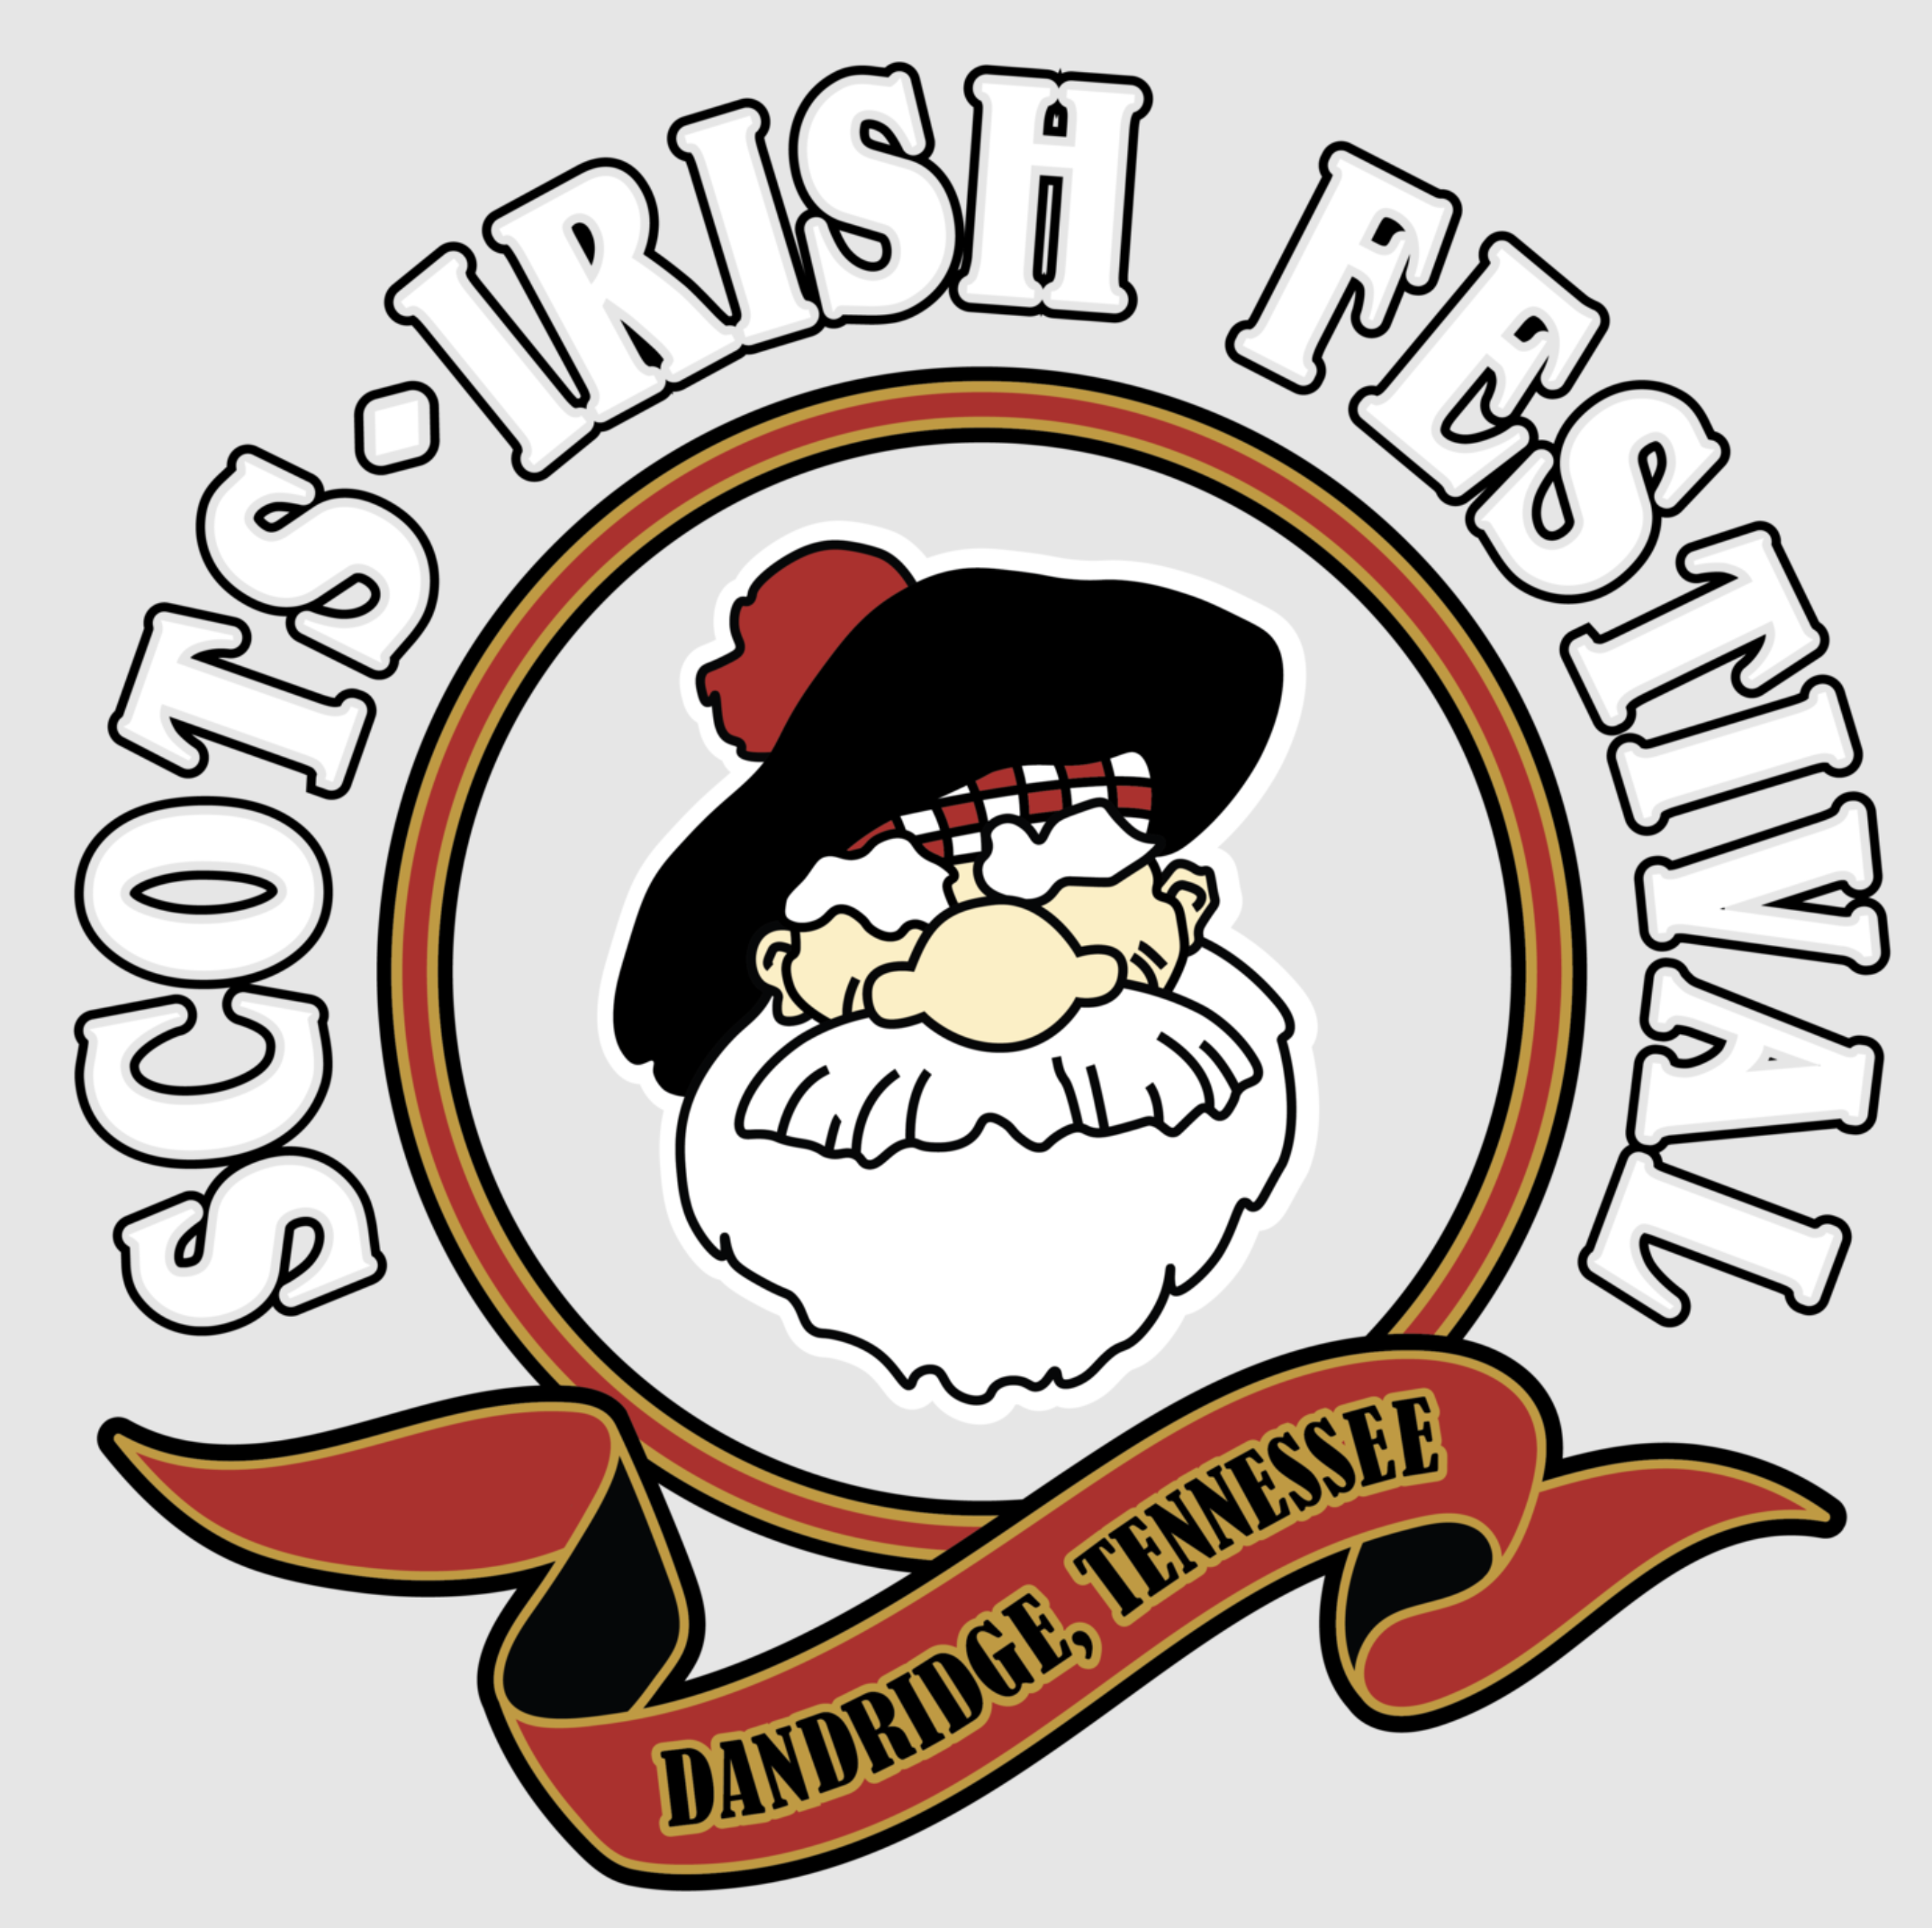 Dandridge ScotsIrish Festival Highland Games and Festivals